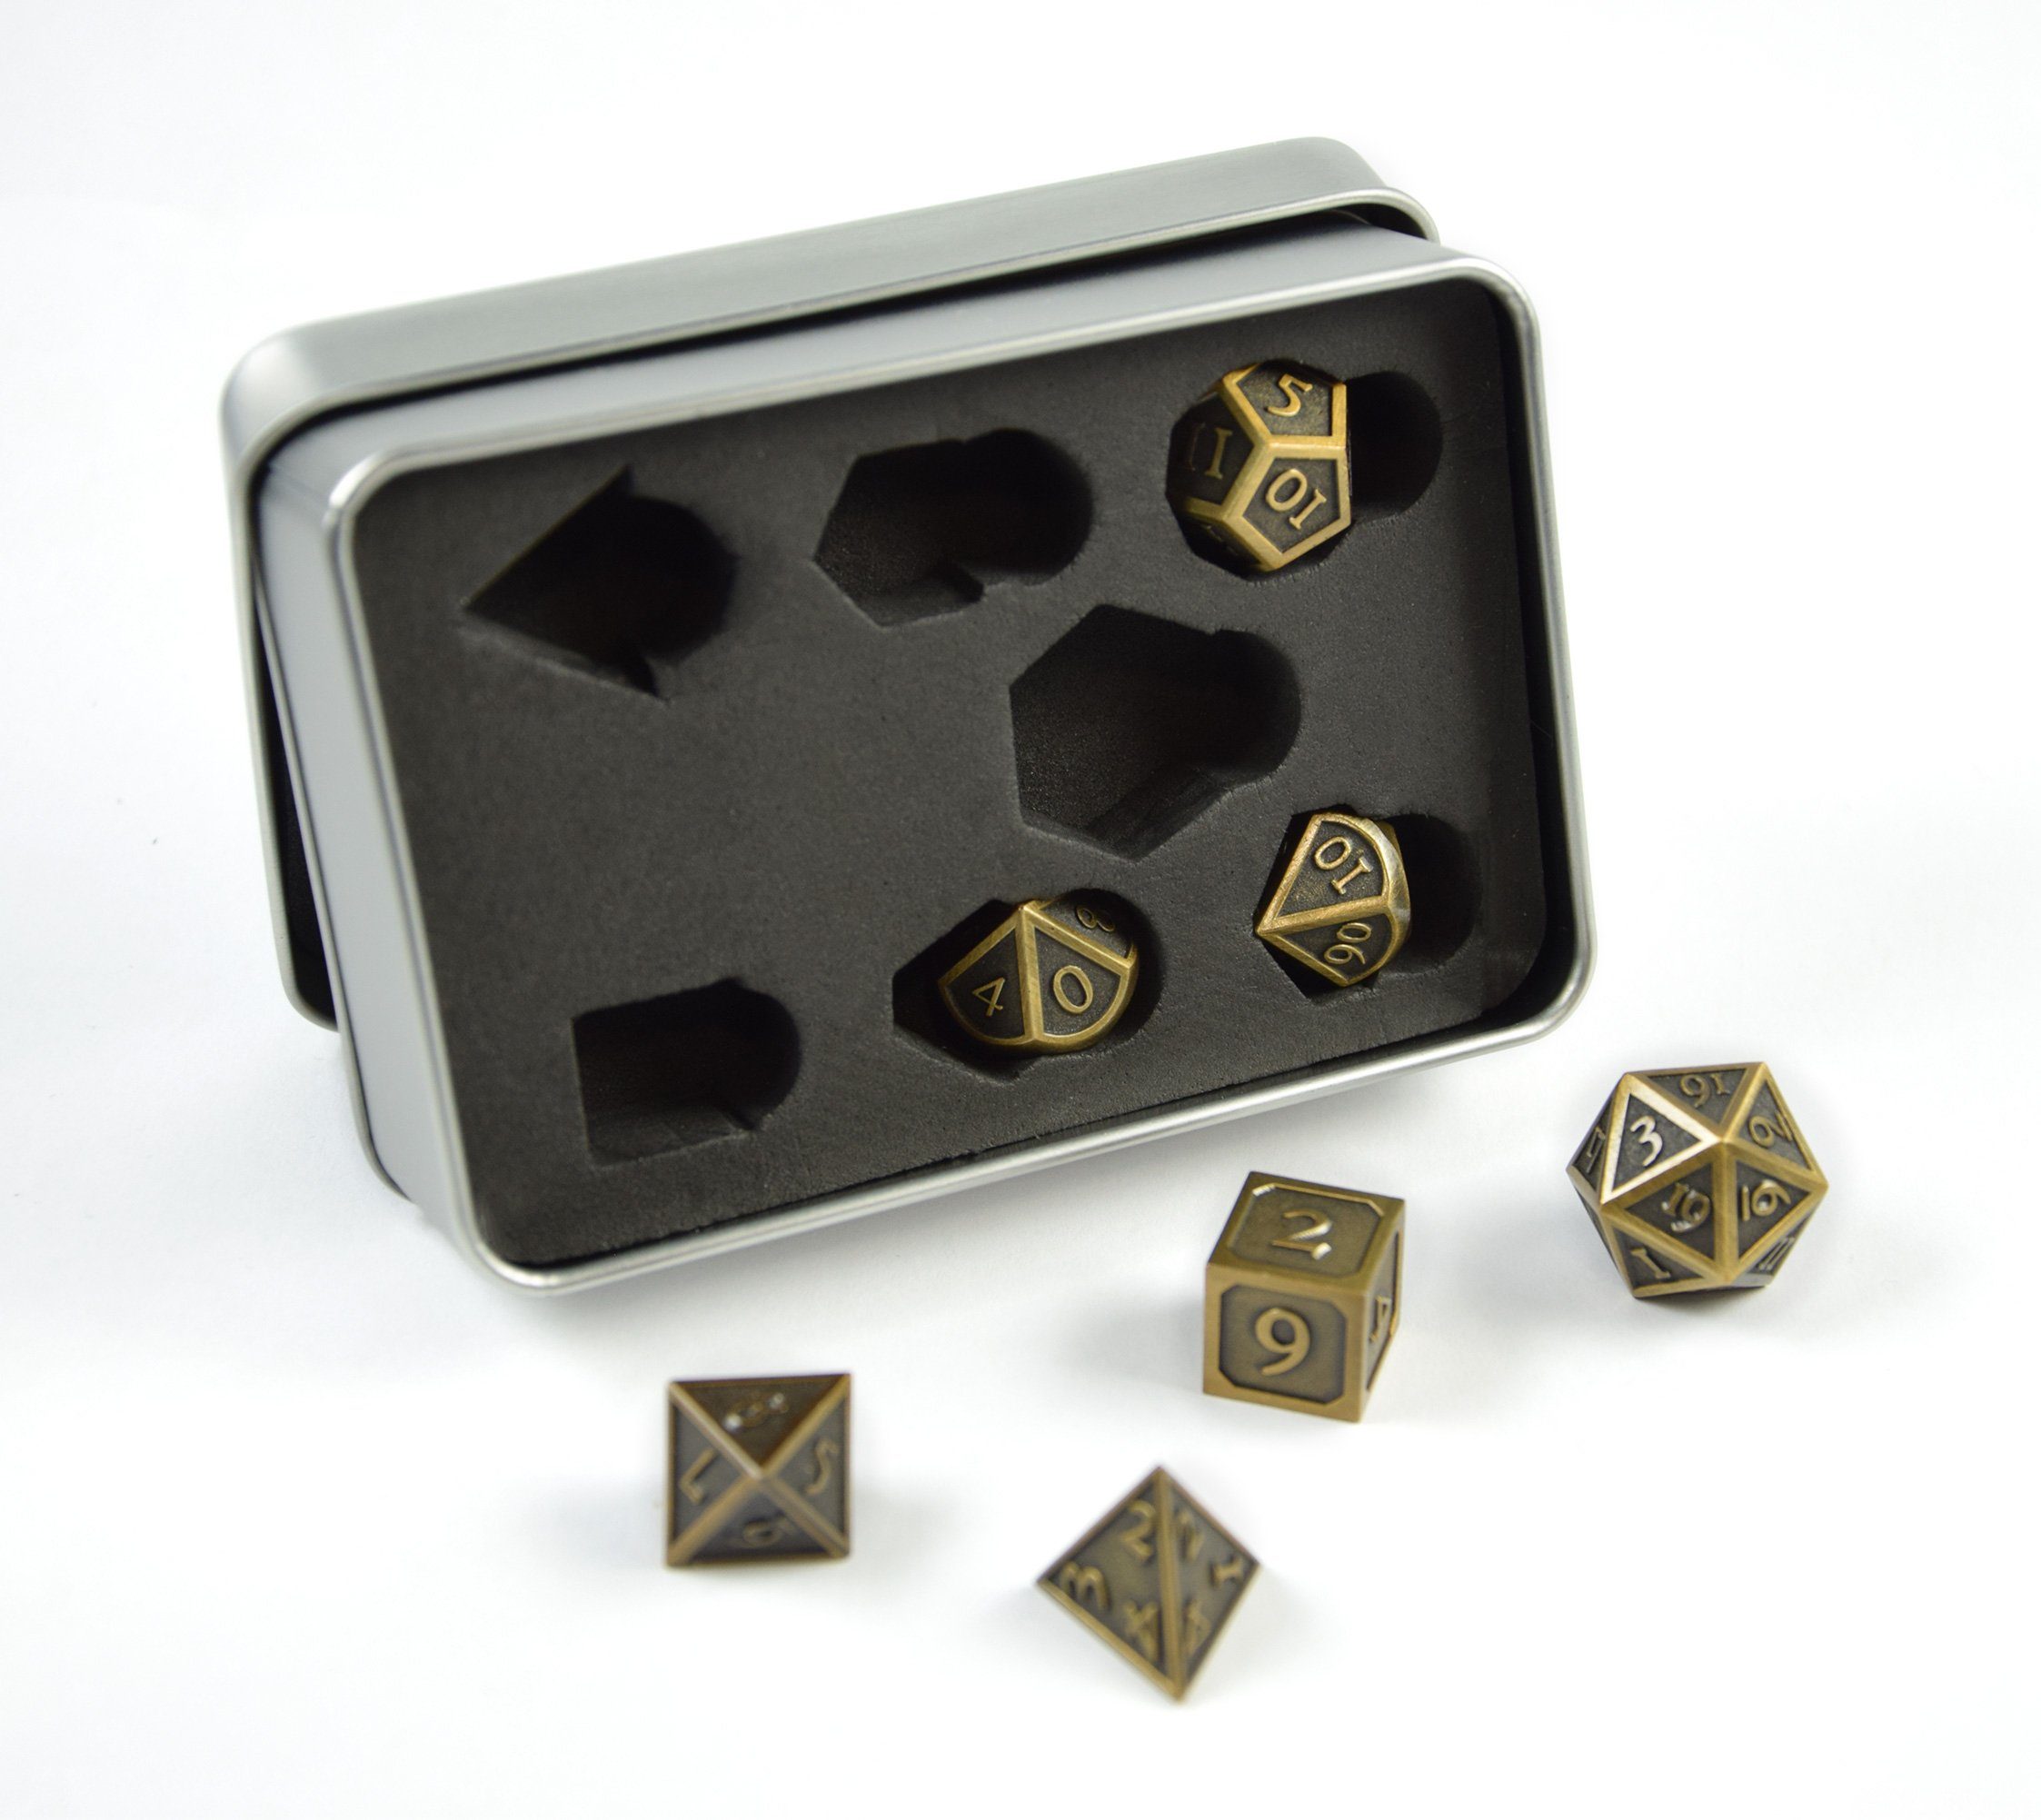 SHIBBY Spielesammlung, 7 polyedrische Metall-DND-Würfel in Steampunk Optik, inkl. Aufbewahrungsbox Gold